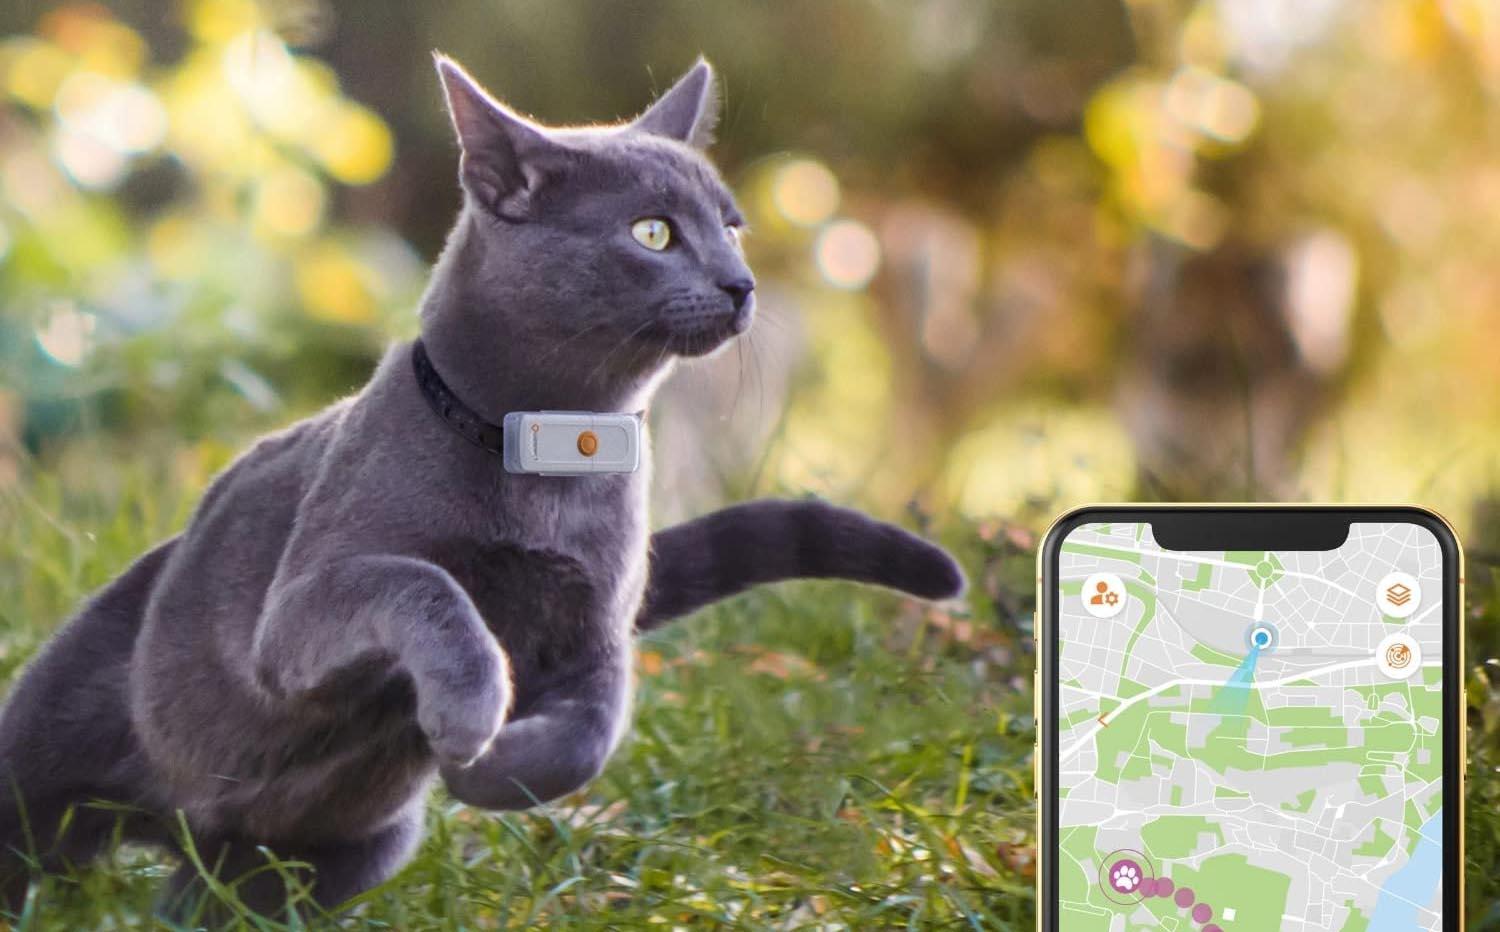 Rastreador GPS para gatos, collar inteligente de seguimiento de mascotas  resistente al agua (solo iOS), sin tarifa mensual, compatible con Apple  Find